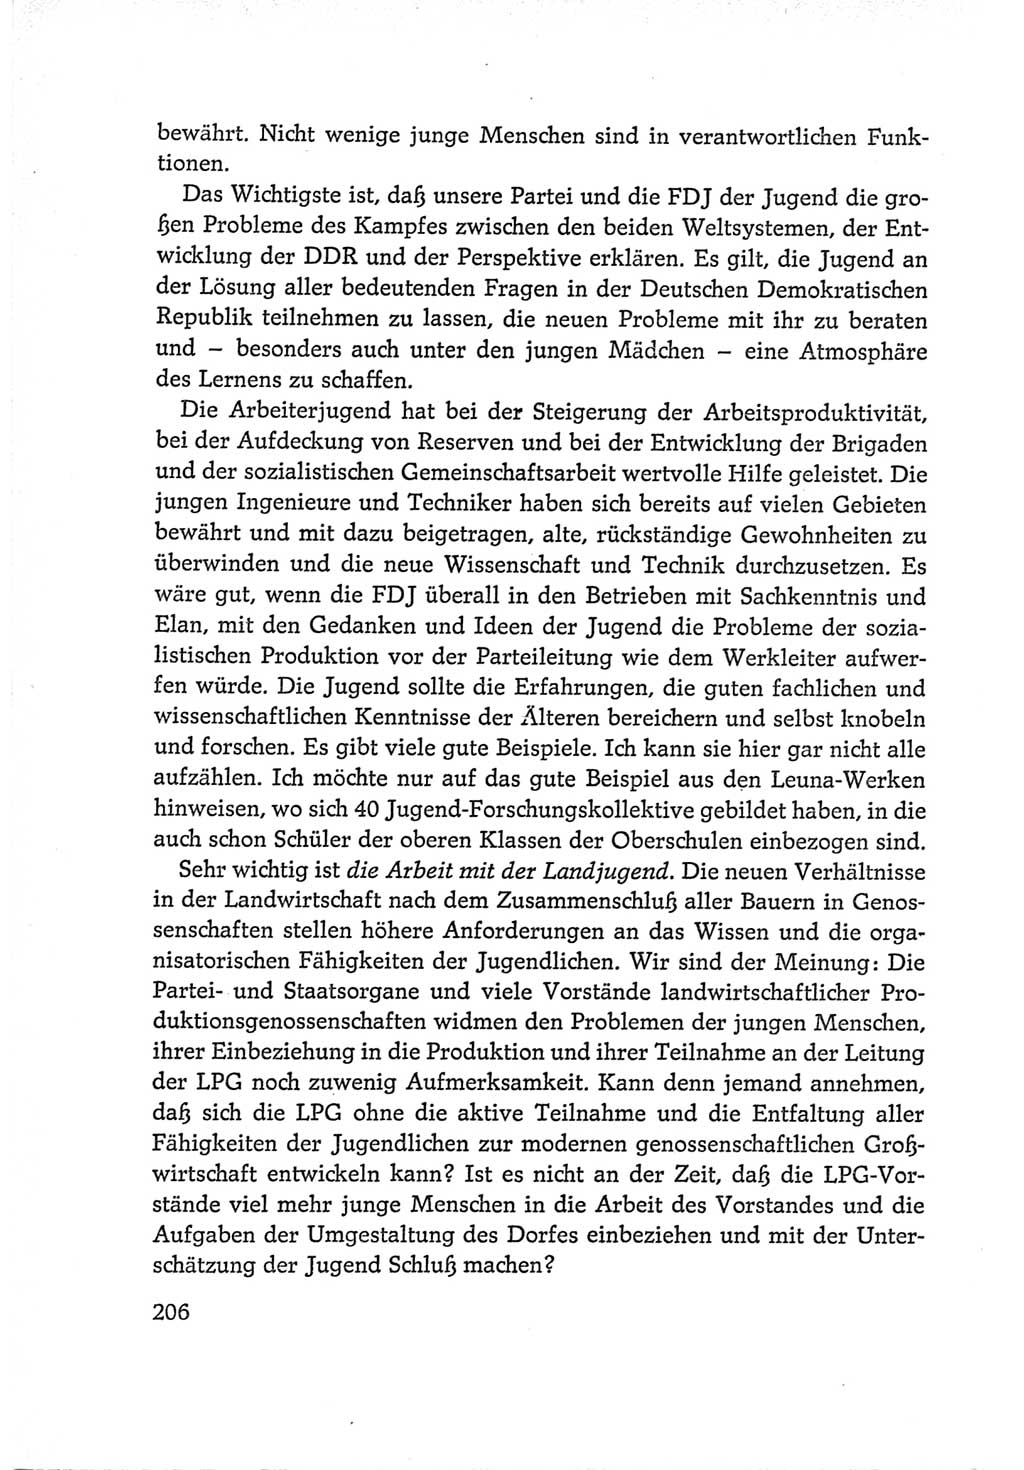 Protokoll der Verhandlungen des Ⅵ. Parteitages der Sozialistischen Einheitspartei Deutschlands (SED) [Deutsche Demokratische Republik (DDR)] 1963, Band Ⅰ, Seite 206 (Prot. Verh. Ⅵ. PT SED DDR 1963, Bd. Ⅰ, S. 206)